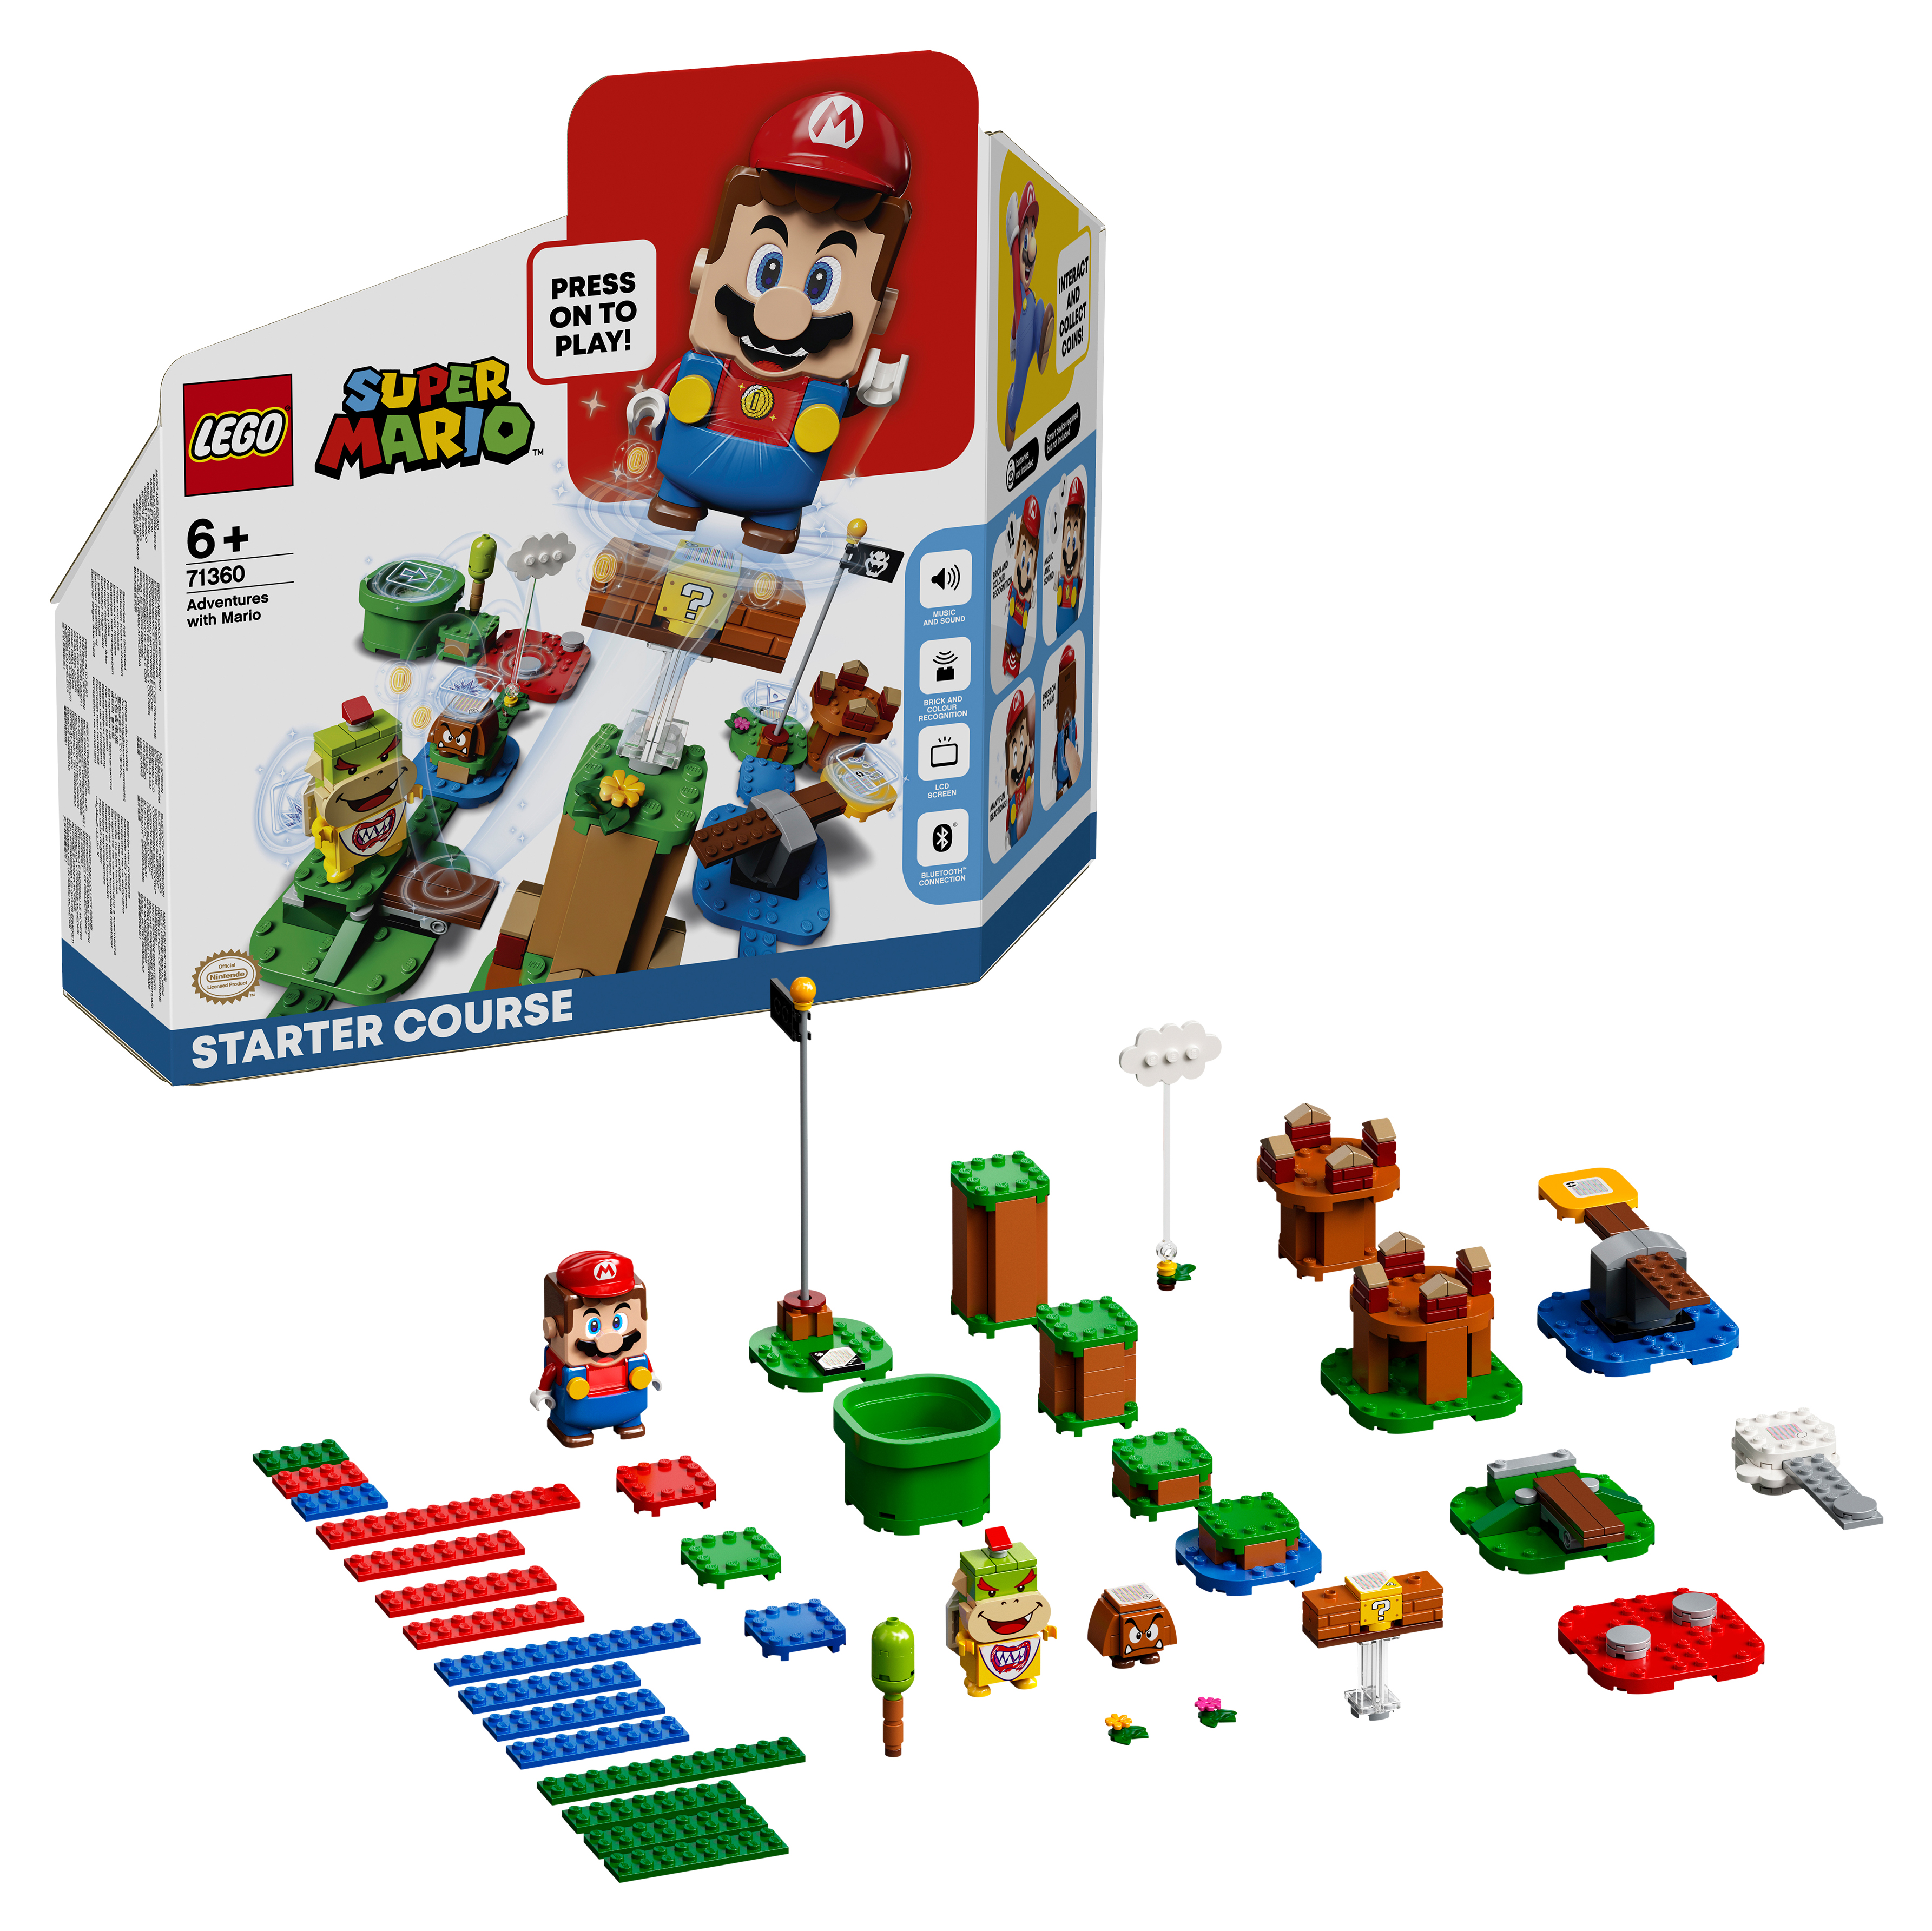 Конструктор LEGO Super Mario Приключения вместе с Марио Стартовый набор, 231 деталь, 71360 конструктор lepin super mario марио могучий боузер большой 2807 дет